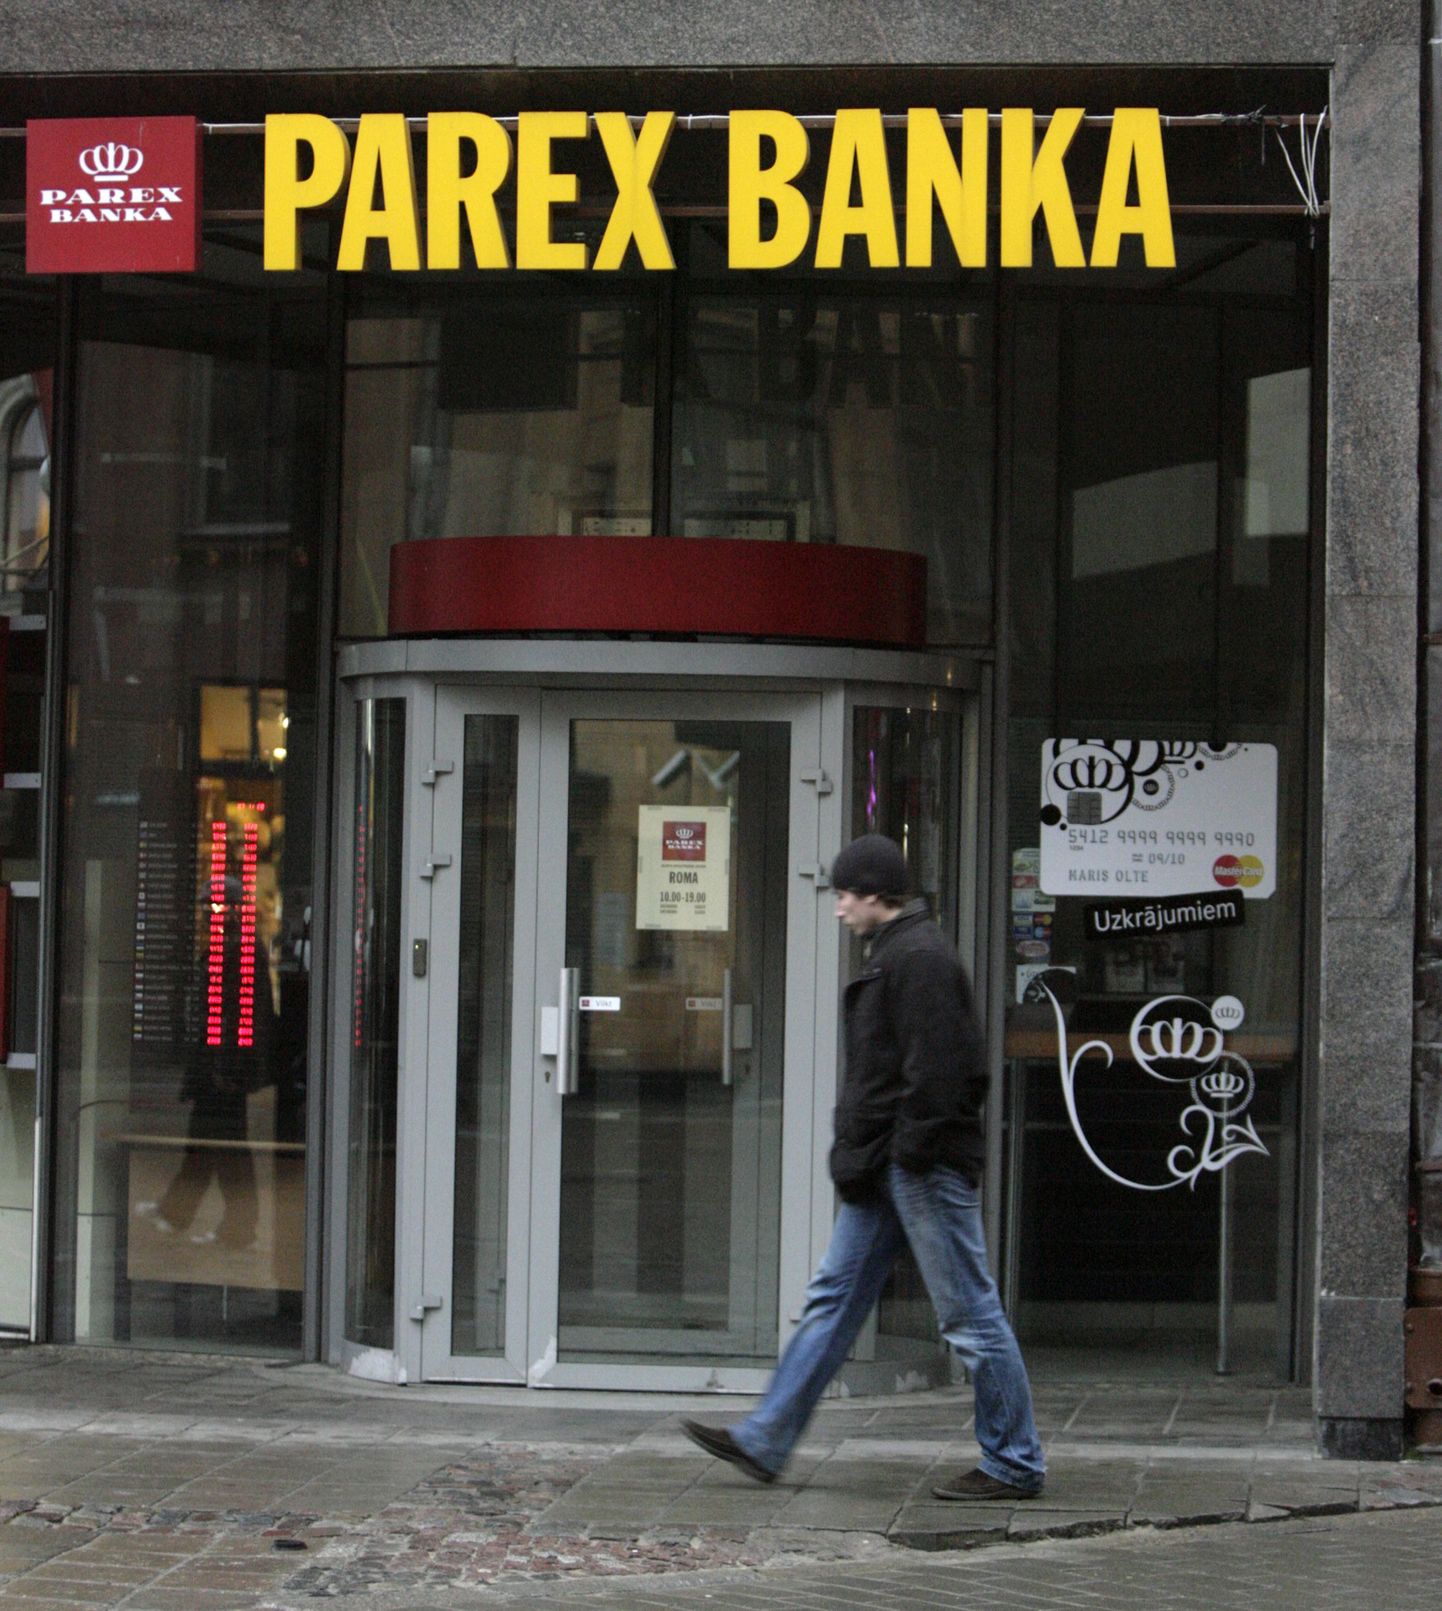 Läti majandus on palju halvemas seisus kui Eesti oma, sest meil ei ole lätlaste sarnast pankroti äärel olnud Parex Panka ega suurt laenu, ütles Briti majandusanalüütik.